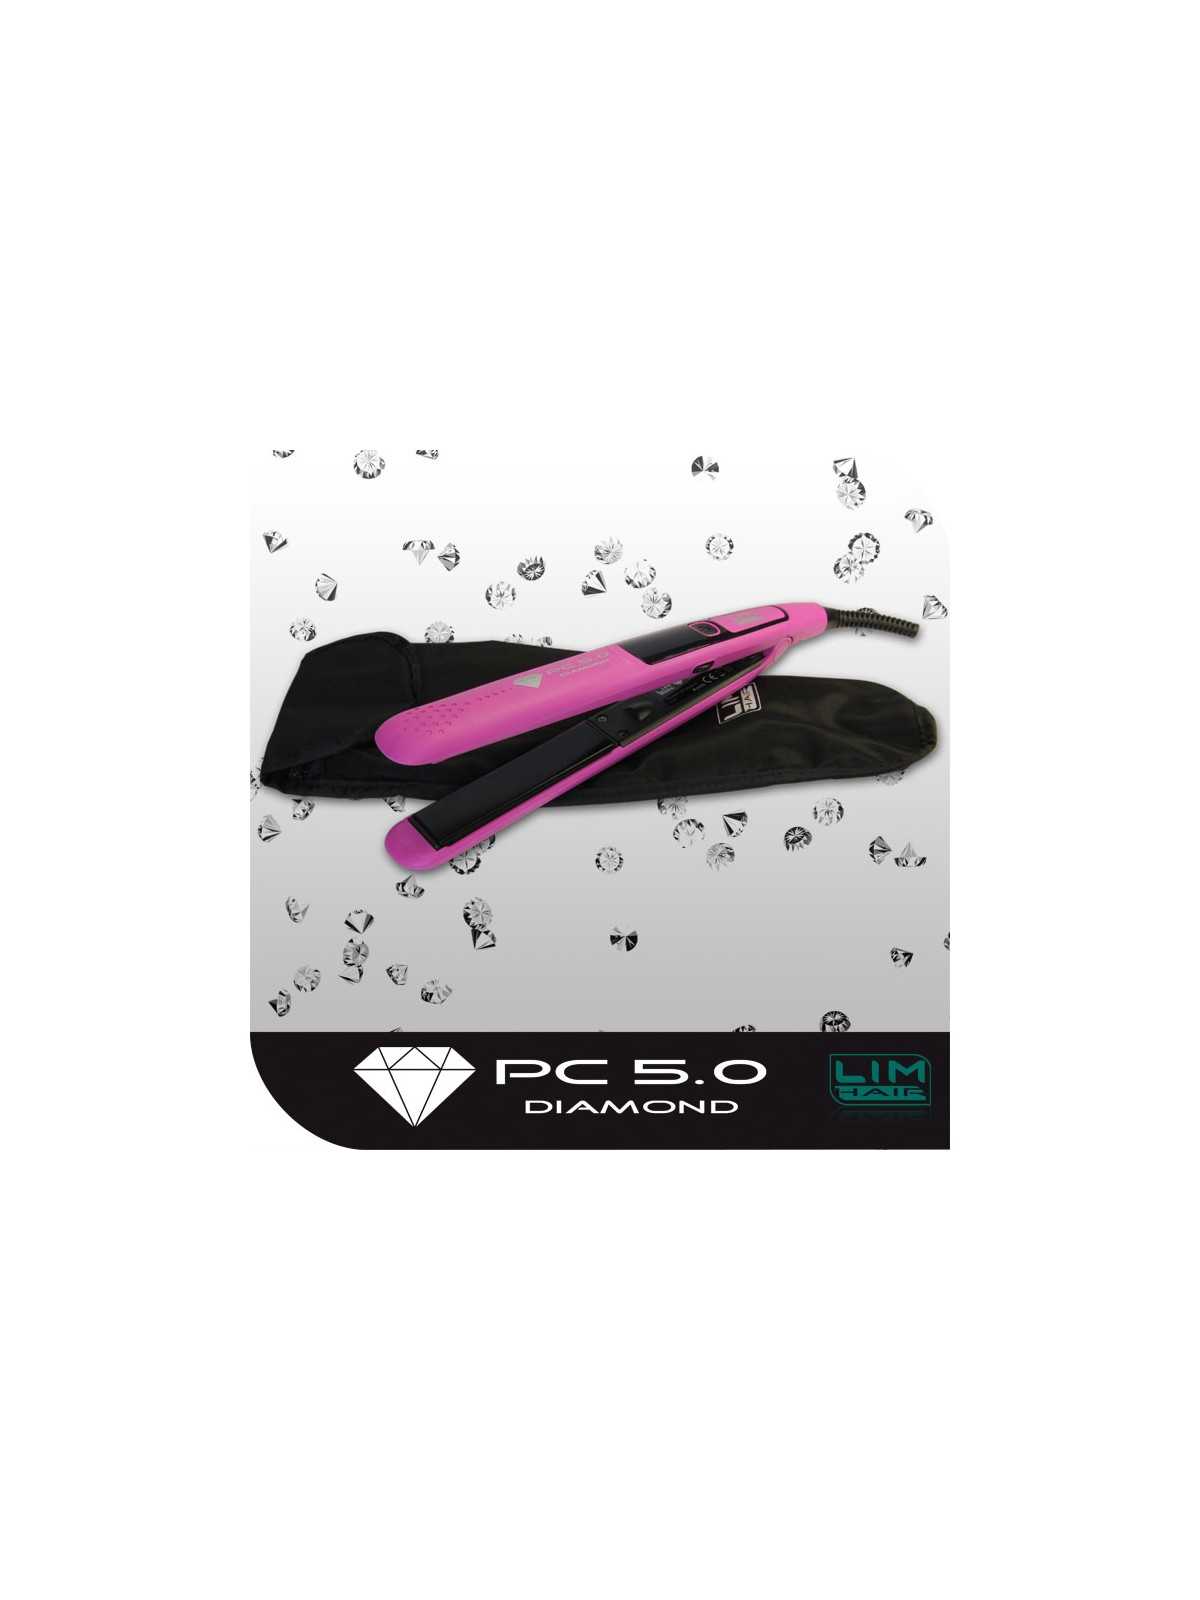 Regala Plancha profesional pc 5.0 Diamond Fucsia .- Lim Hair con nuestra selección de Tenacillas y Planchas por tan sólo 47,11 € o precio específico 40,04 € en Thalie Care